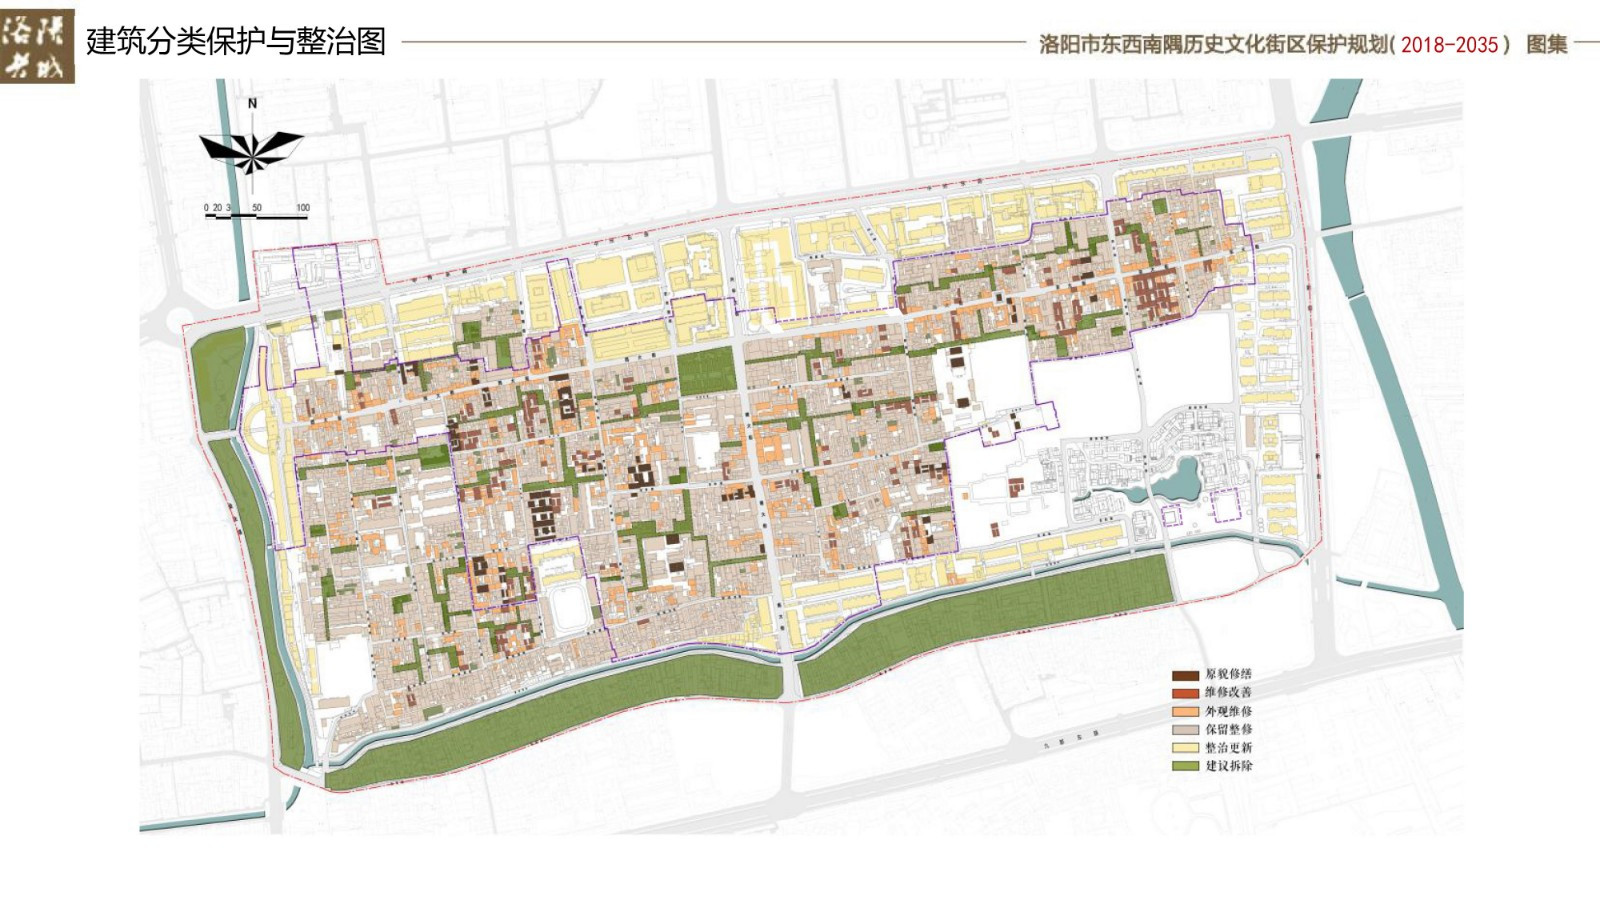 洛阳东西南隅历史文化街区（老城片区）保护规划（2018-2035）》公示